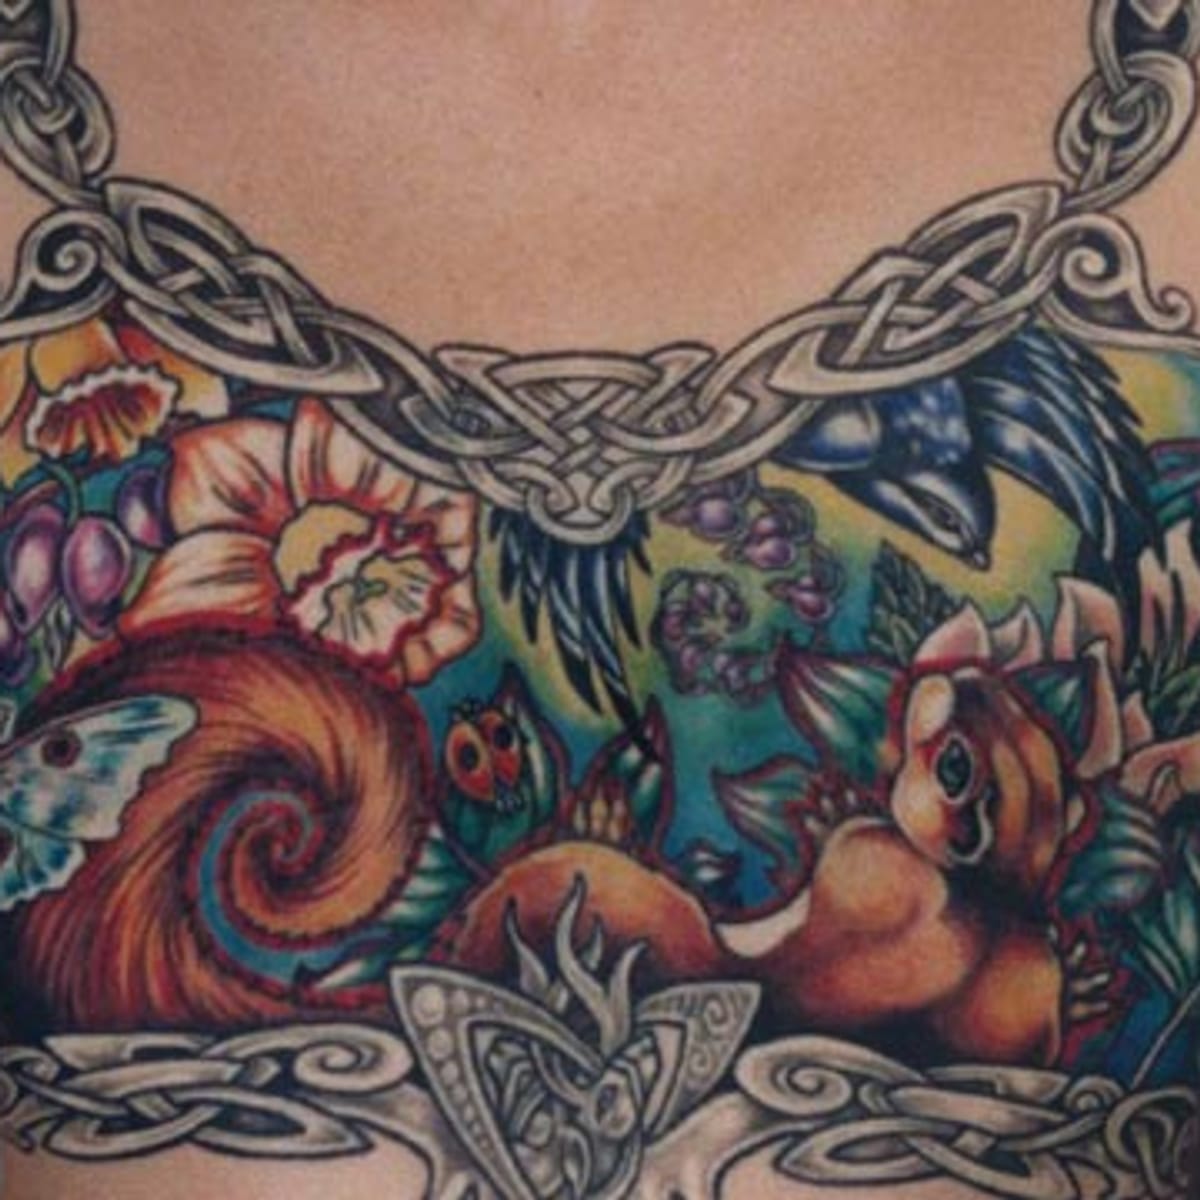 Bildband über Tattoos: Bodies of Subversion von Margot Mifflin